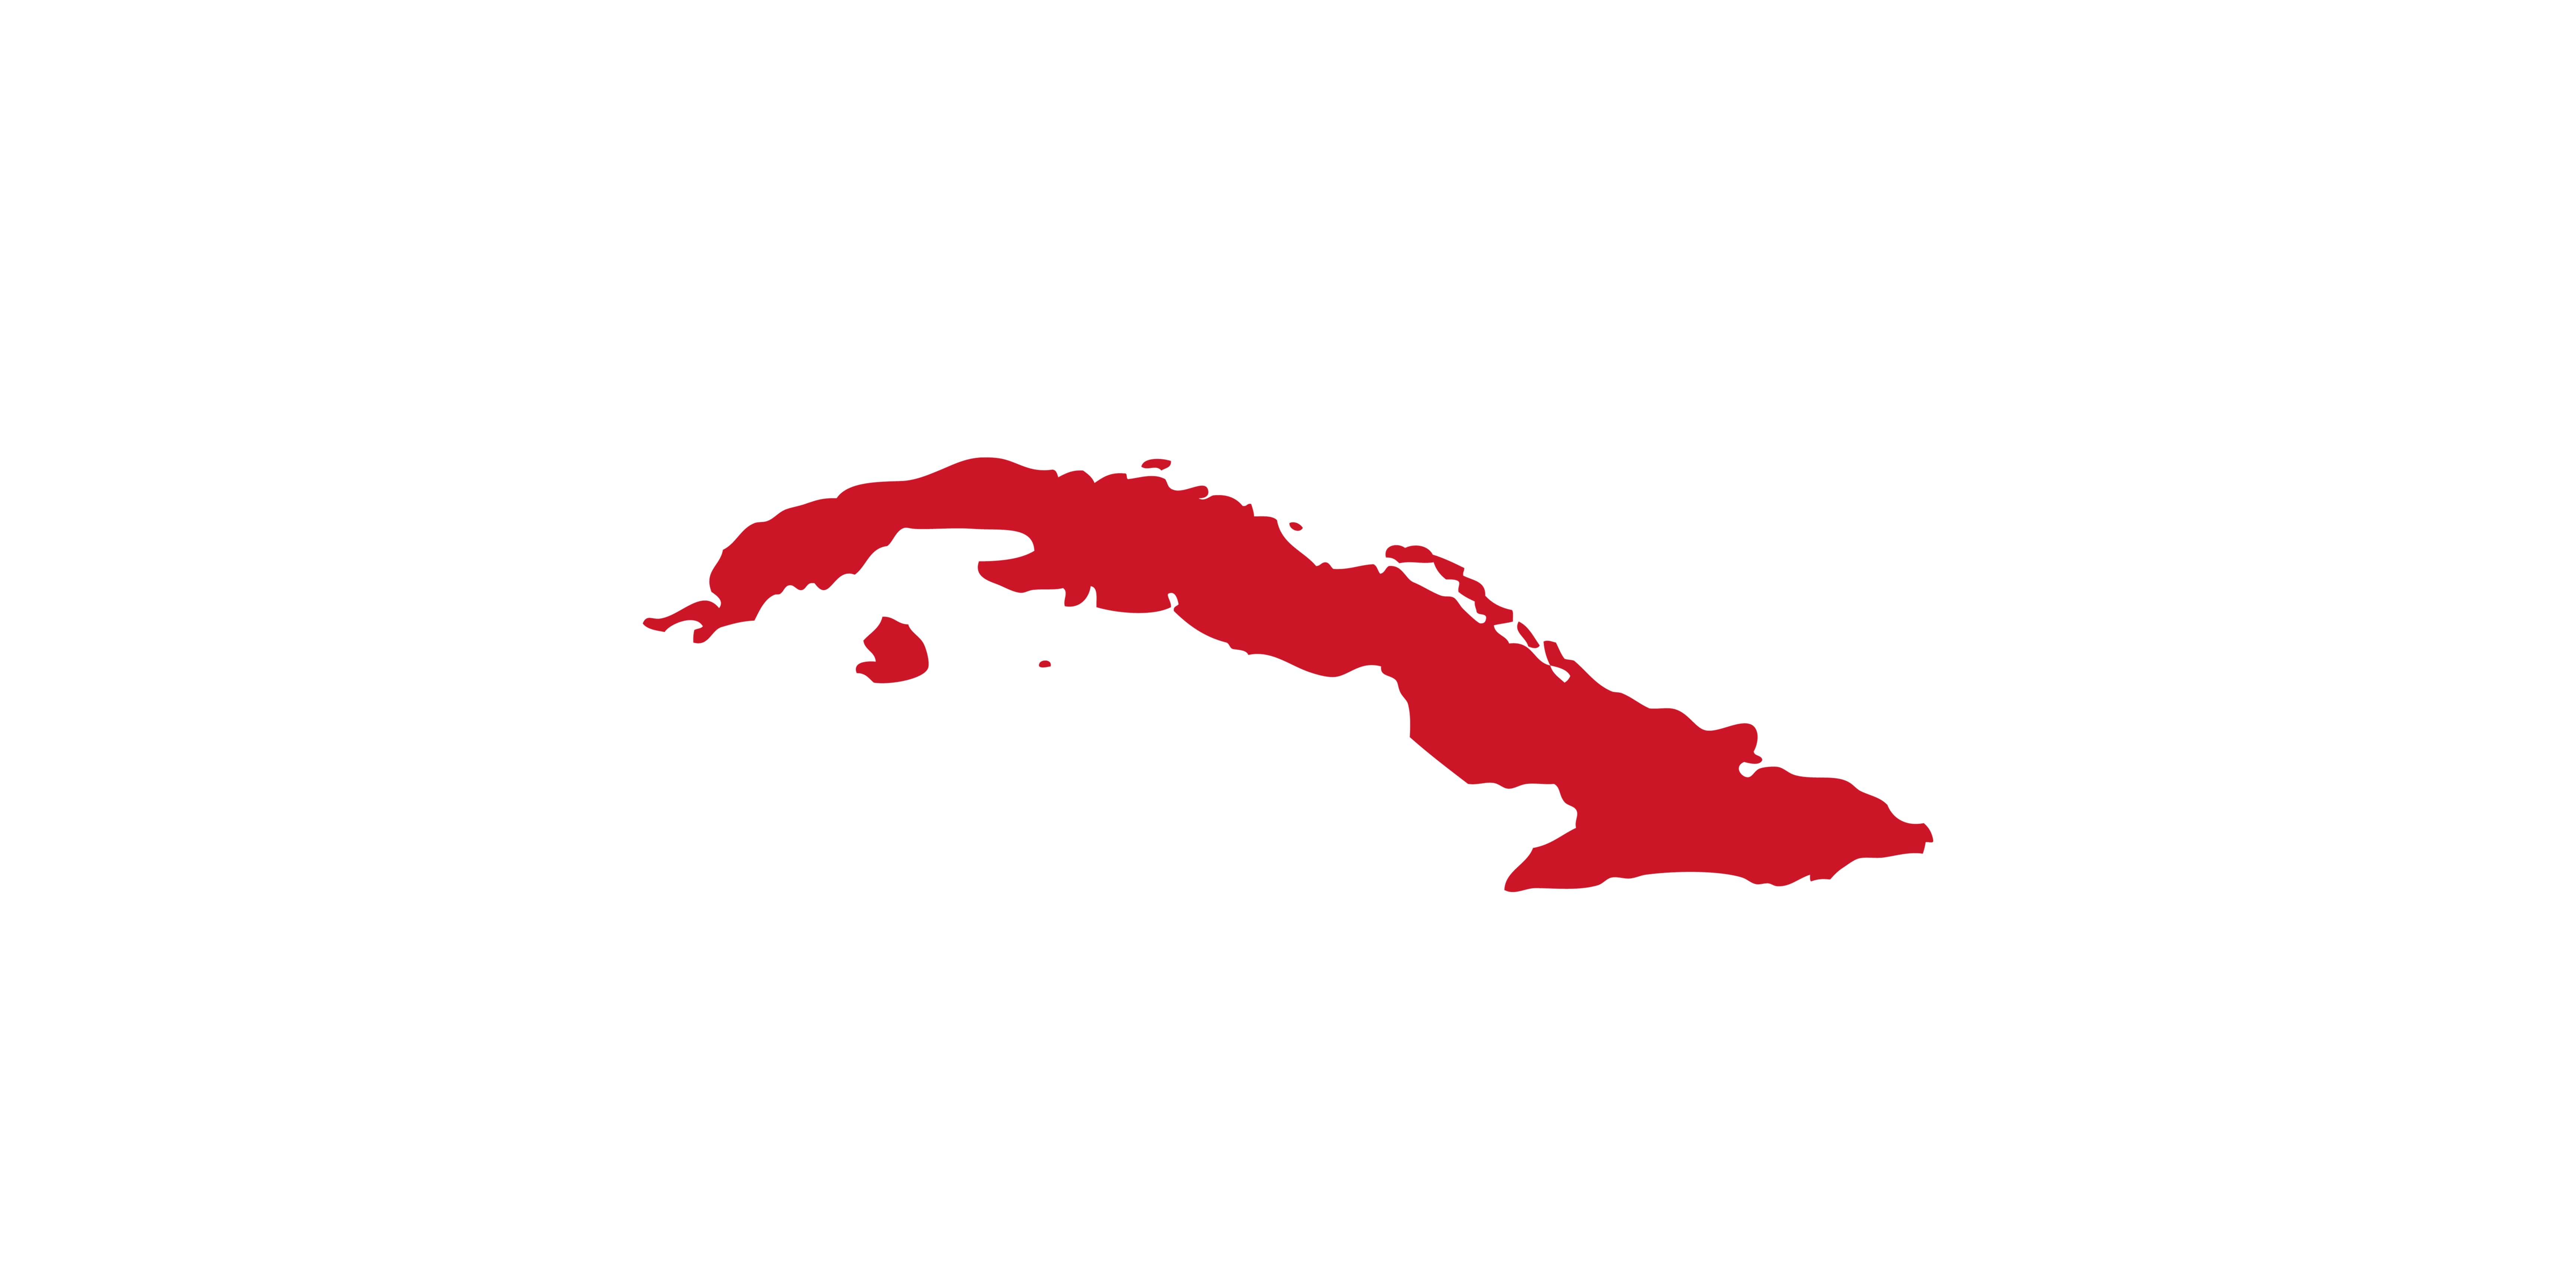 grafiki projektowe - Kuba, wykonanie: Arkadiusz Zając